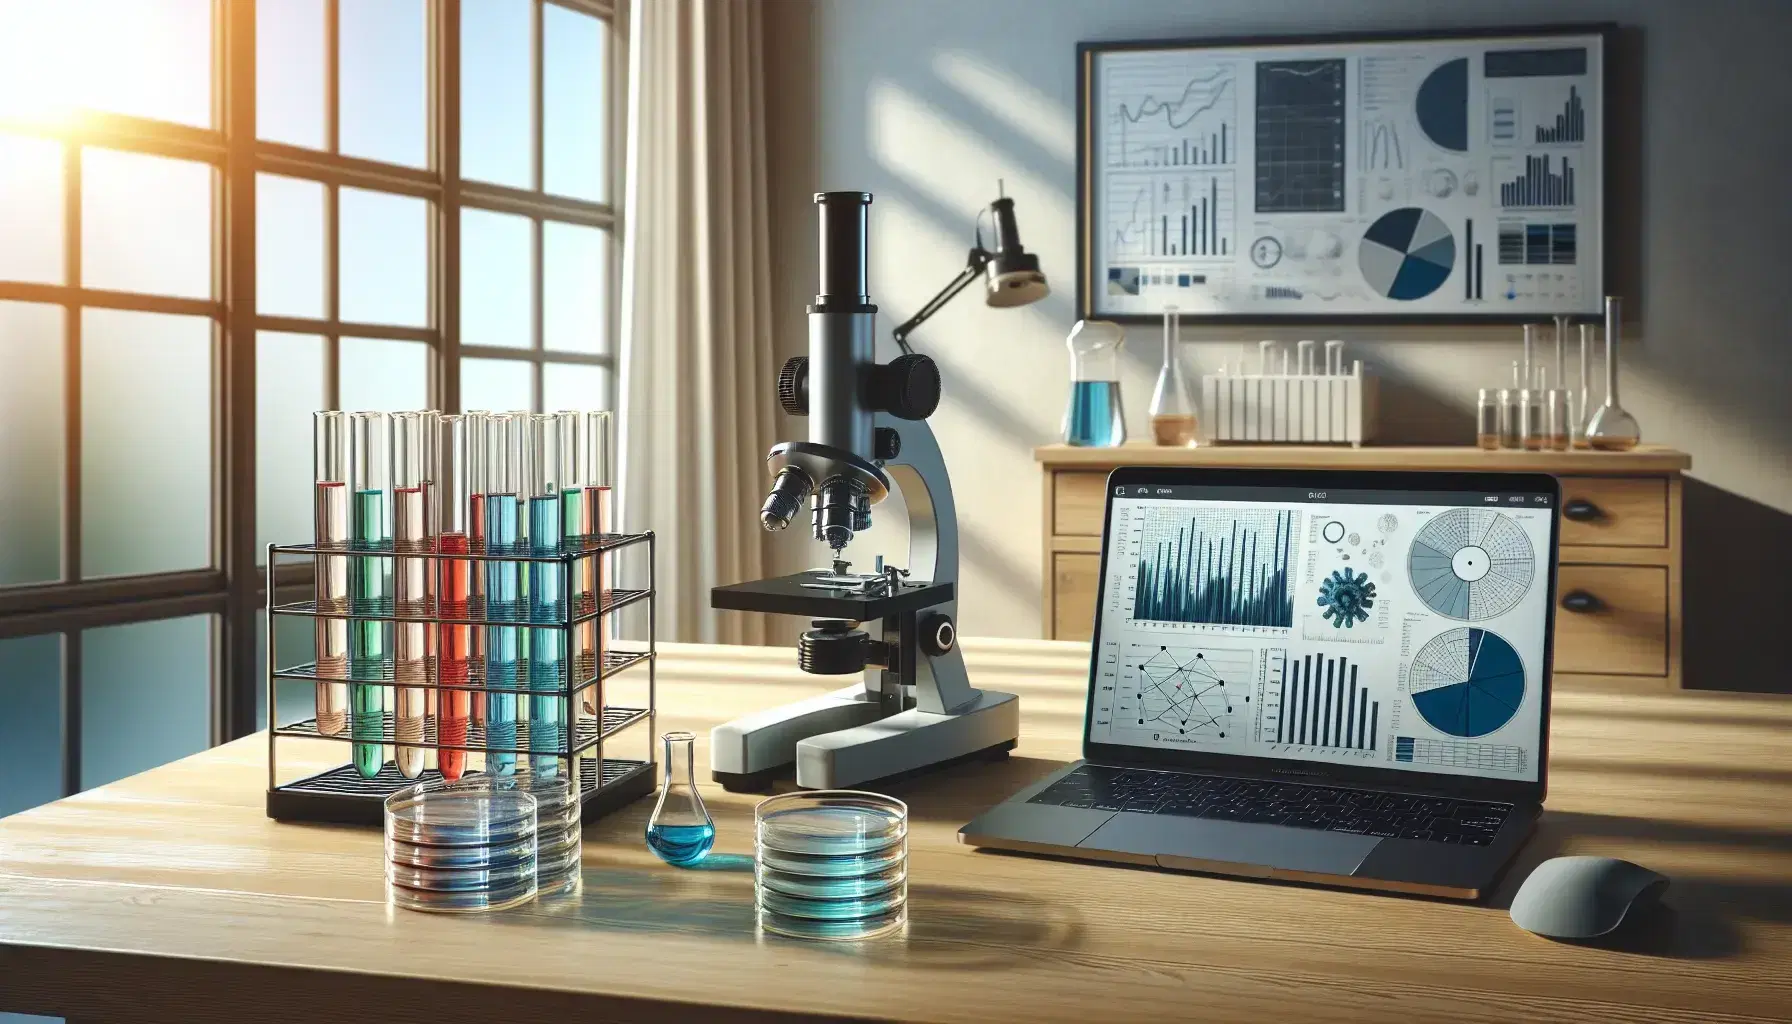 Mesa de trabajo de madera con microscopio, tubos de ensayo con líquidos de colores, placas de Petri y portátil mostrando gráficos, en habitación iluminada.